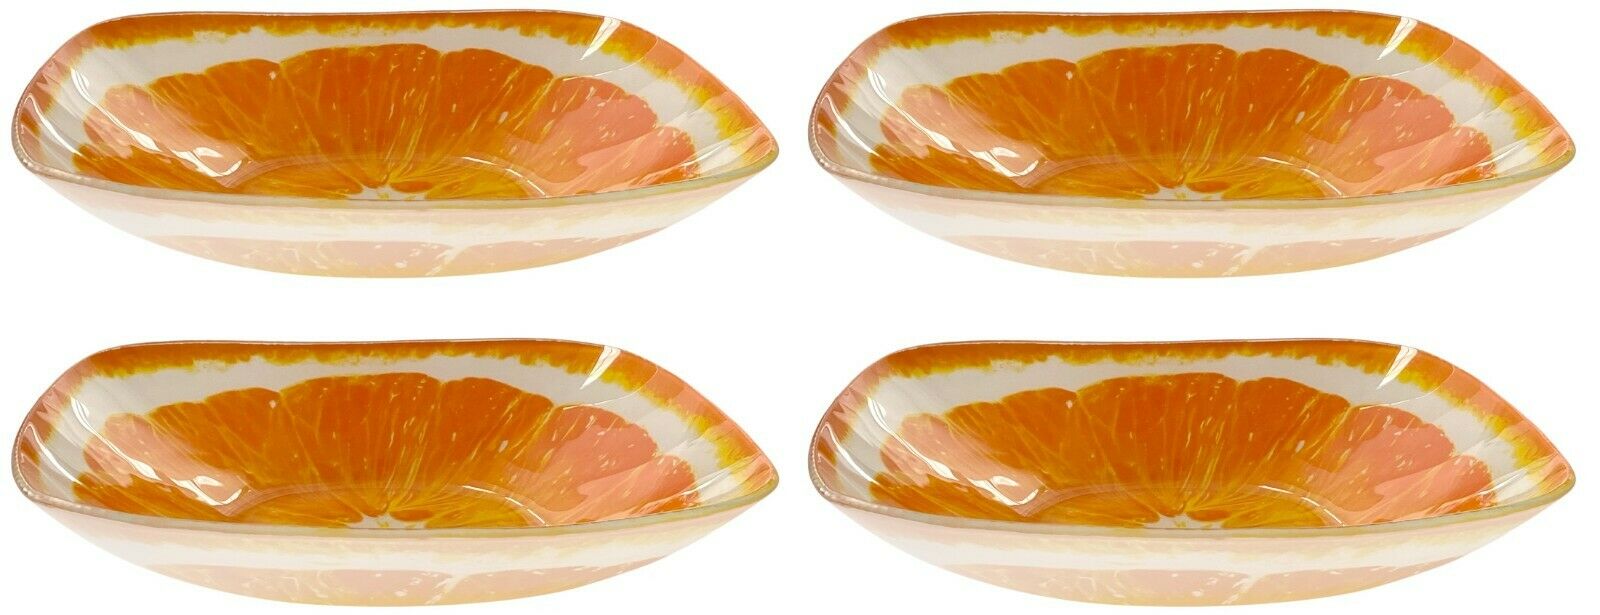 Set Of 4 Large Glass Bowls Bright Coloured Citrus 19cm Desert Bowls Soup Bowls